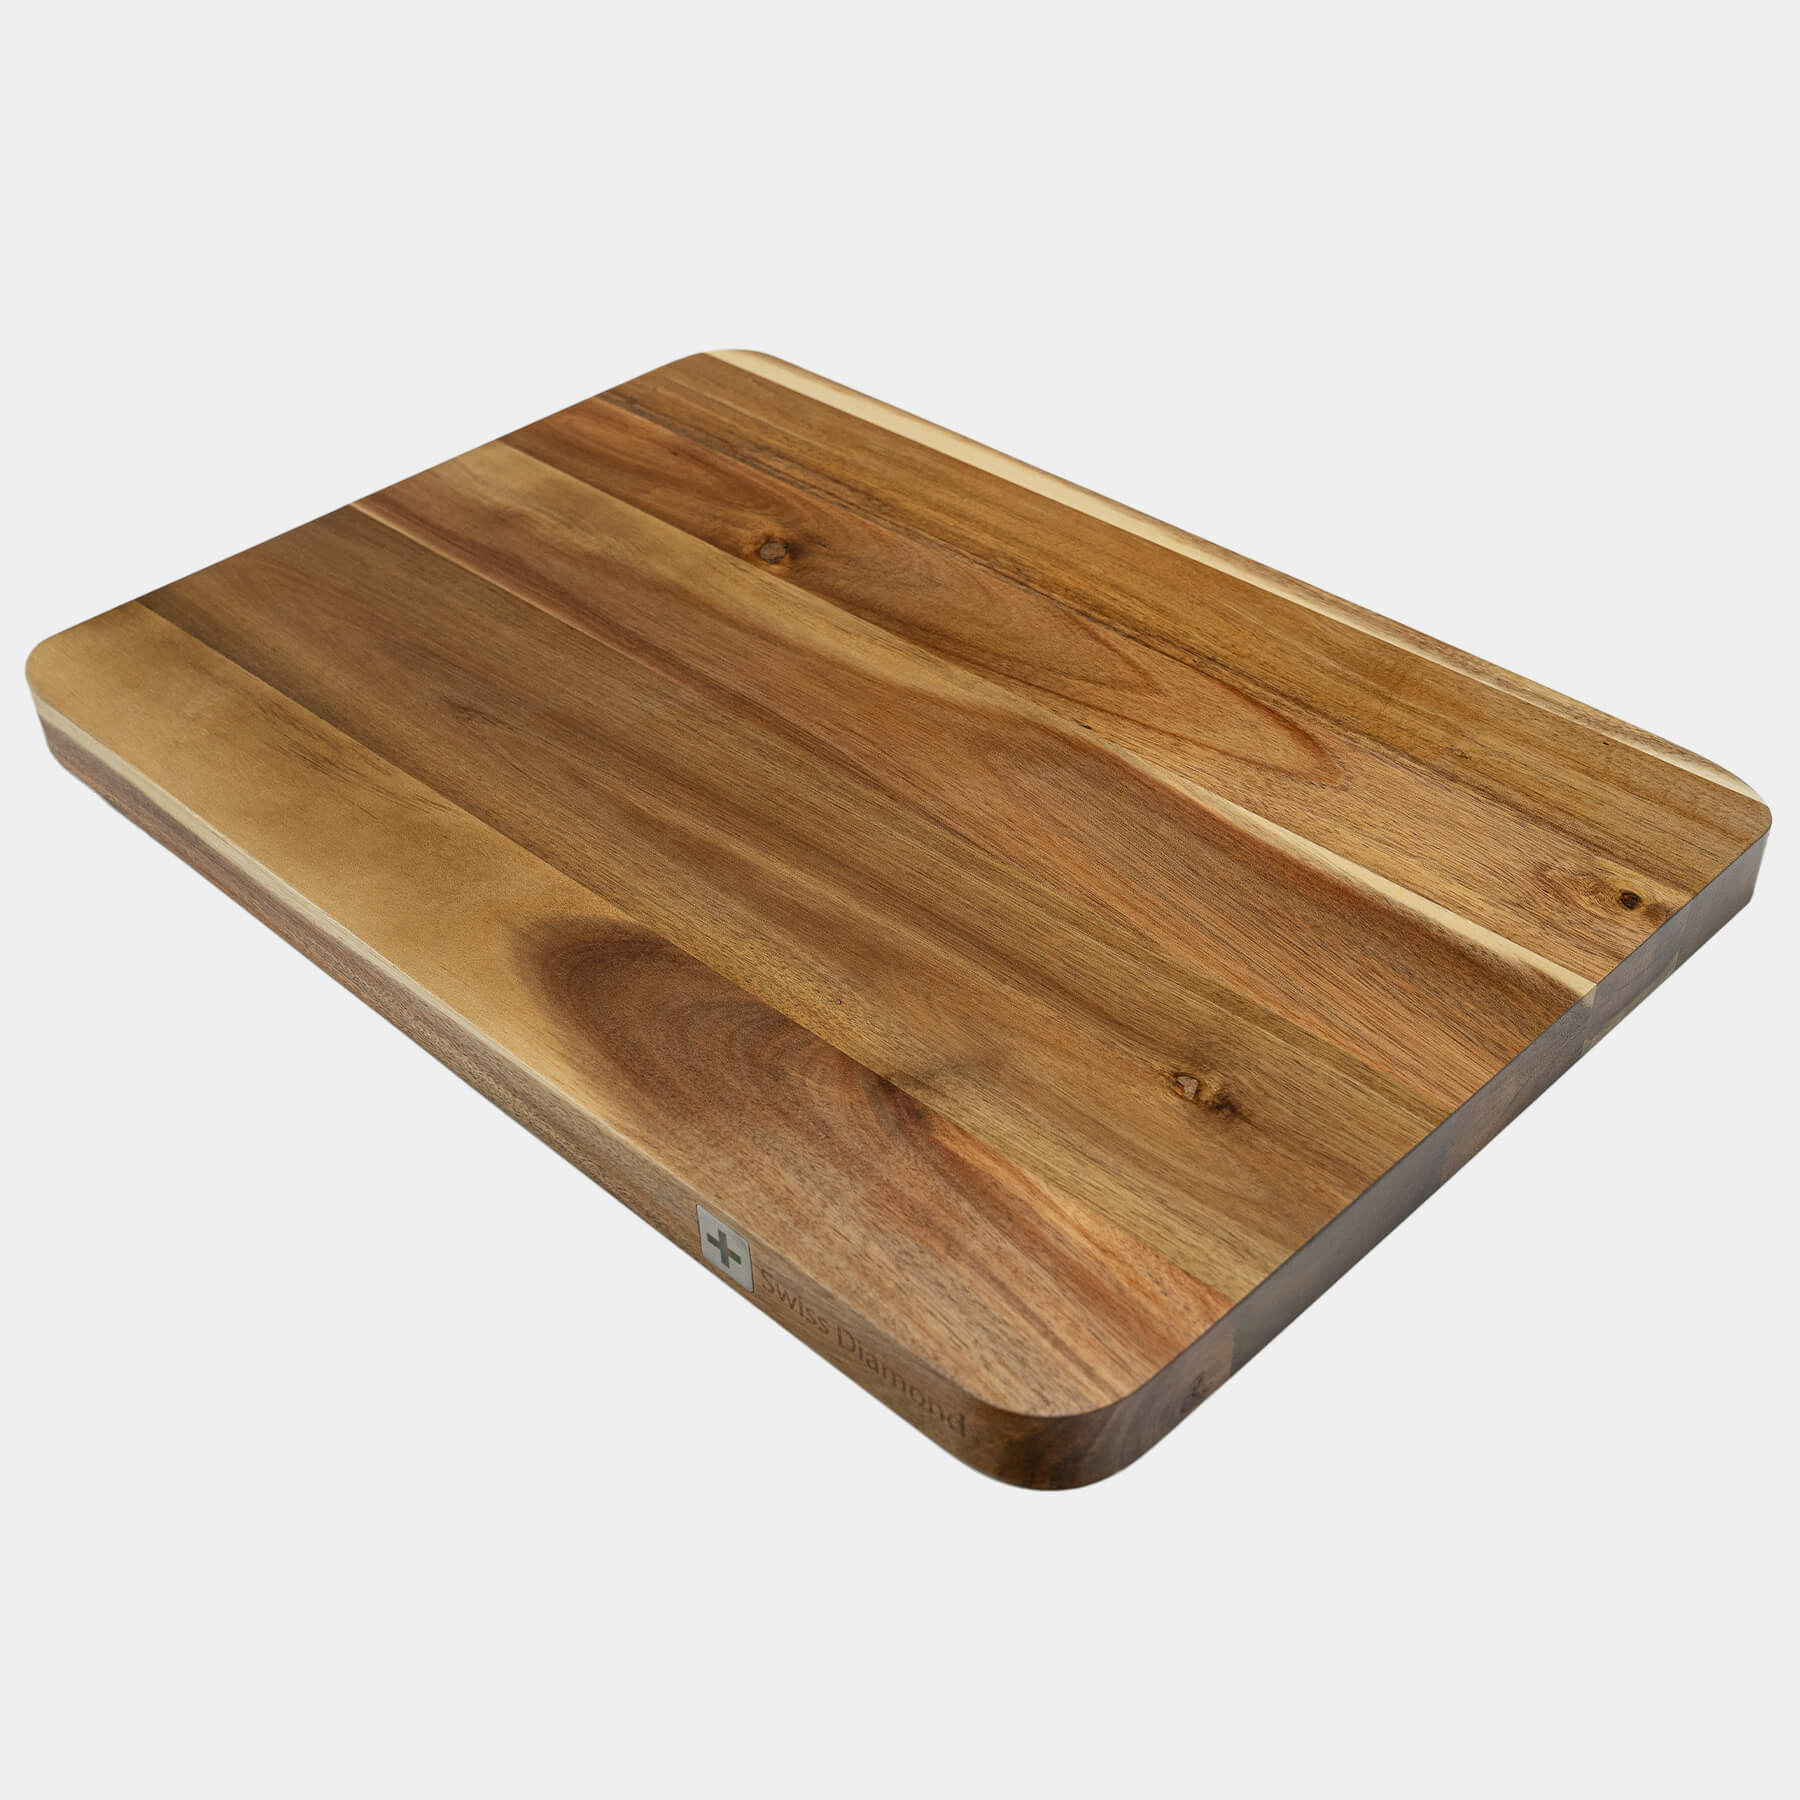 20" Acacia Wood Cutting Board at an angle